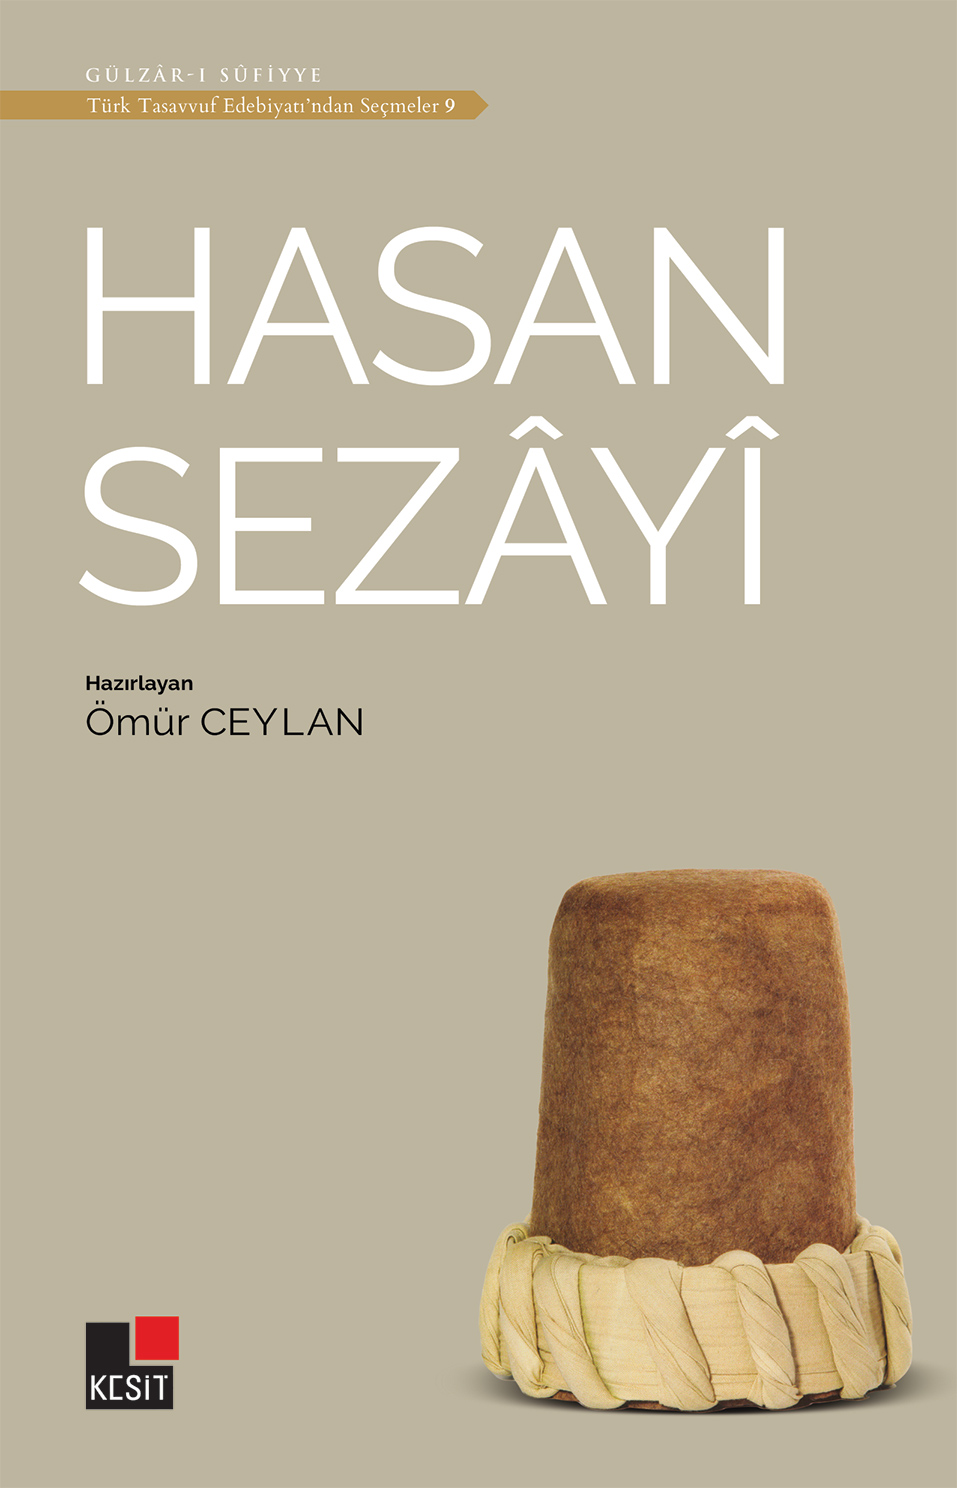 Hasan Sezâyî / Türk tasavvuf edebiyatından seçmeler 9